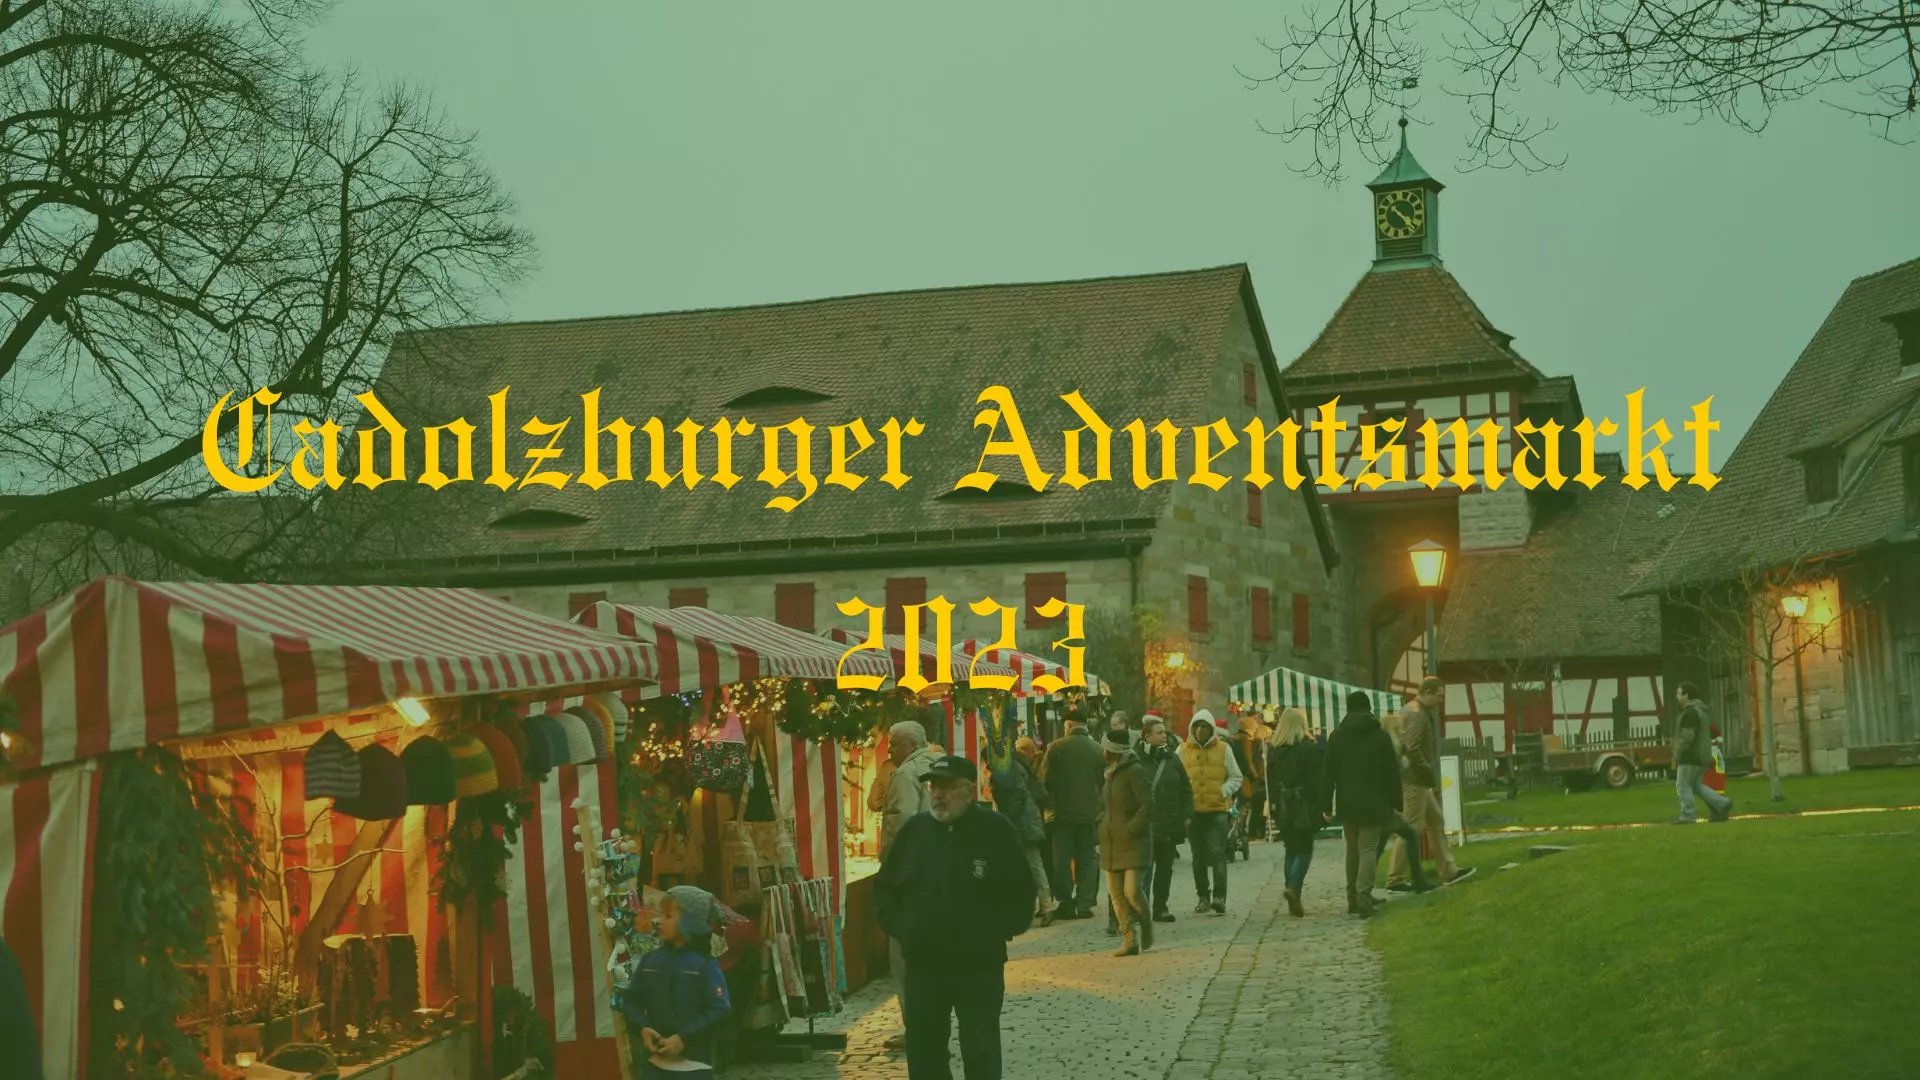 Beispielbild für den Cadolzburger Adventsmarkt